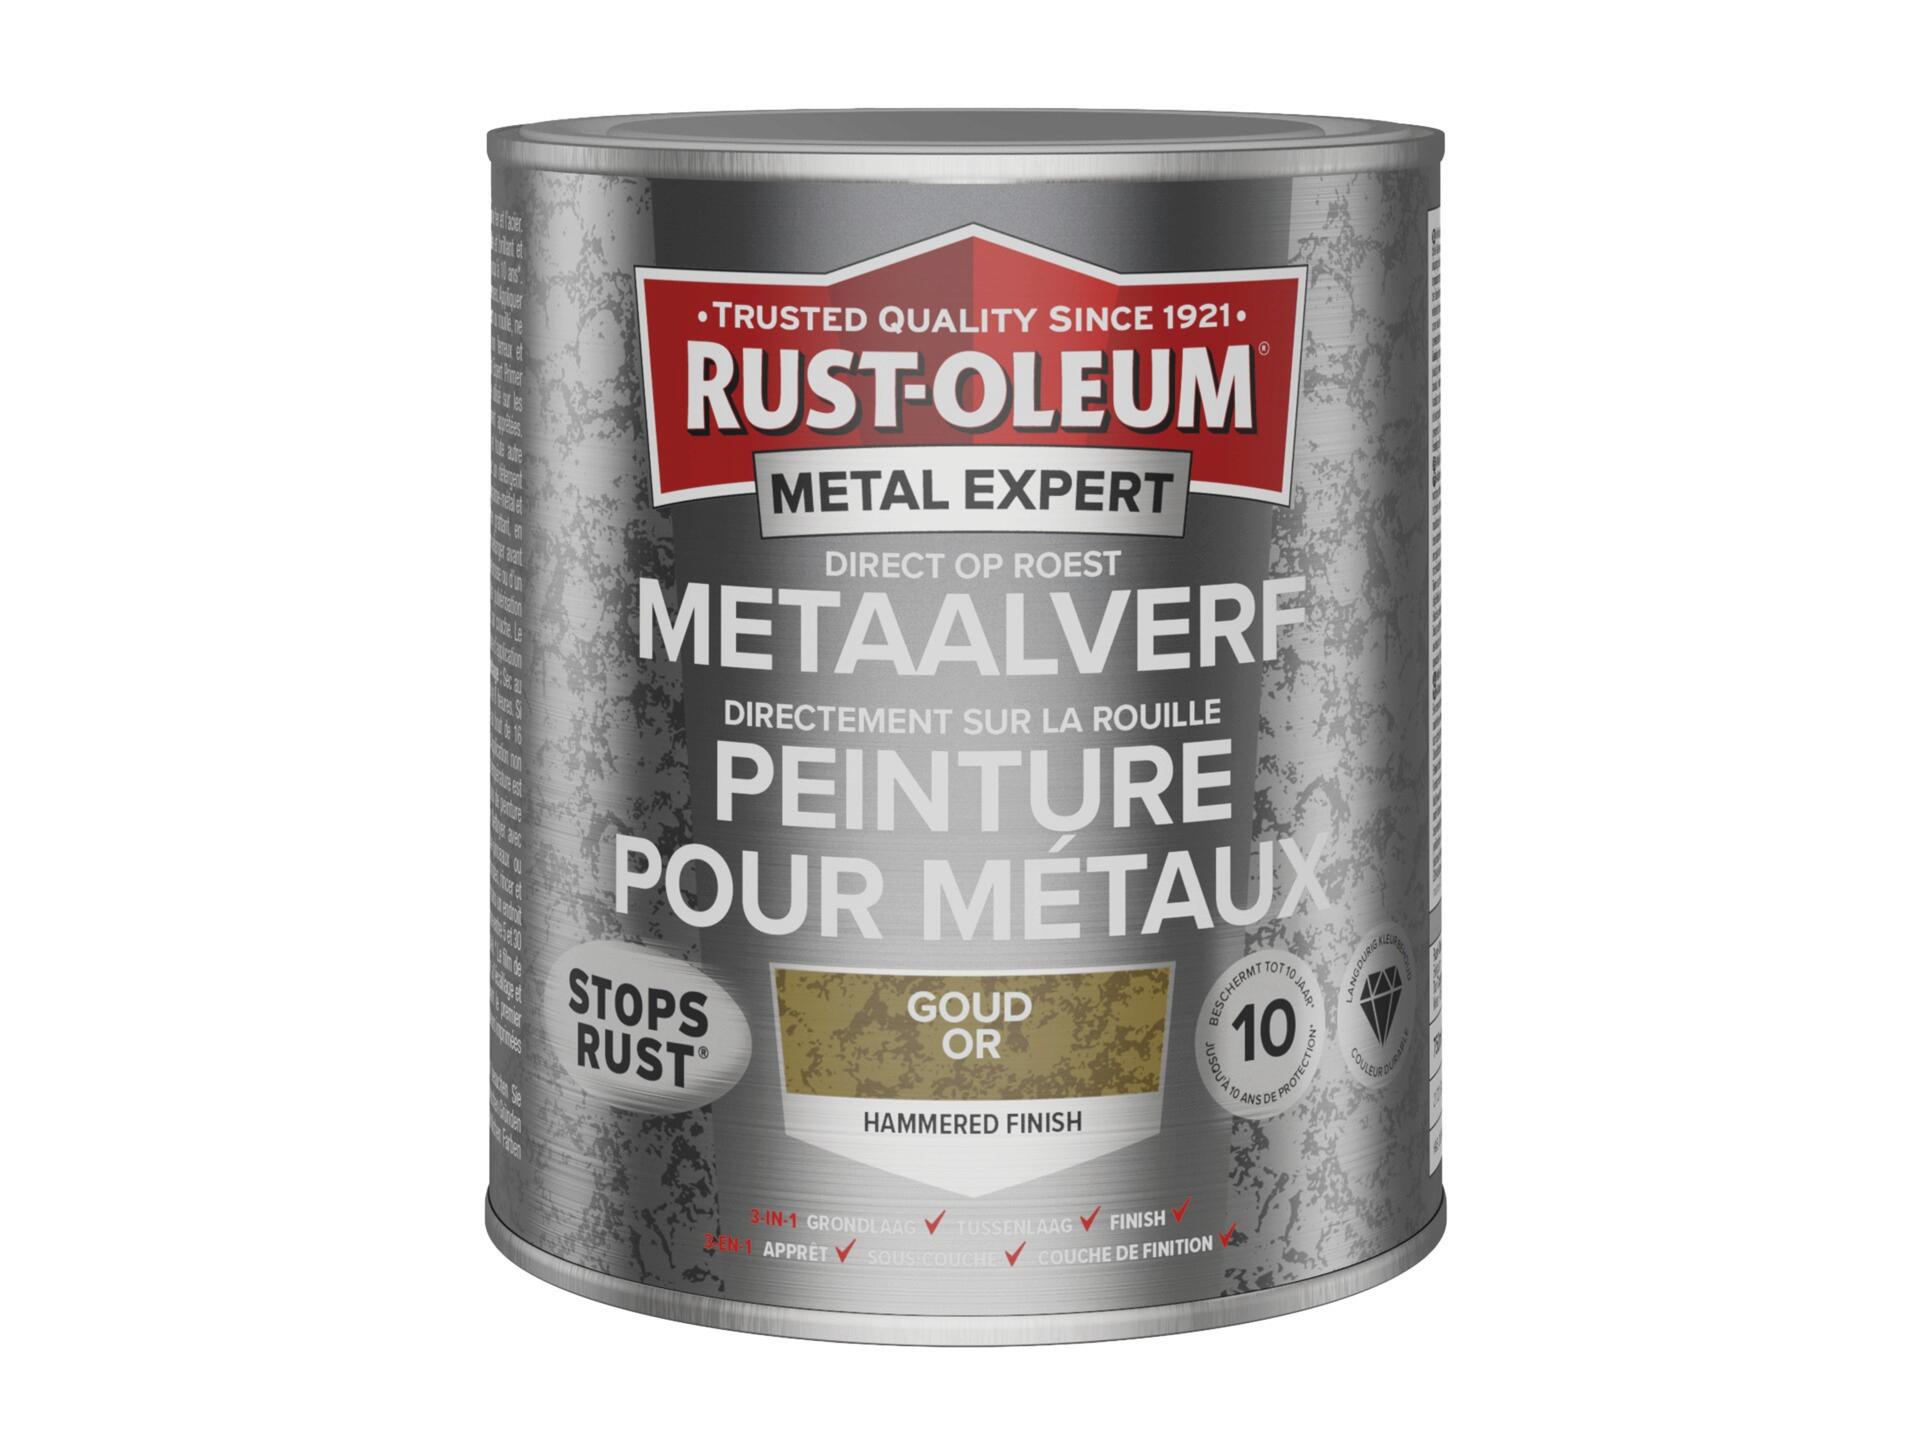 Rust-oleum Metal Expert peinture pour métaux martelé 750ml or